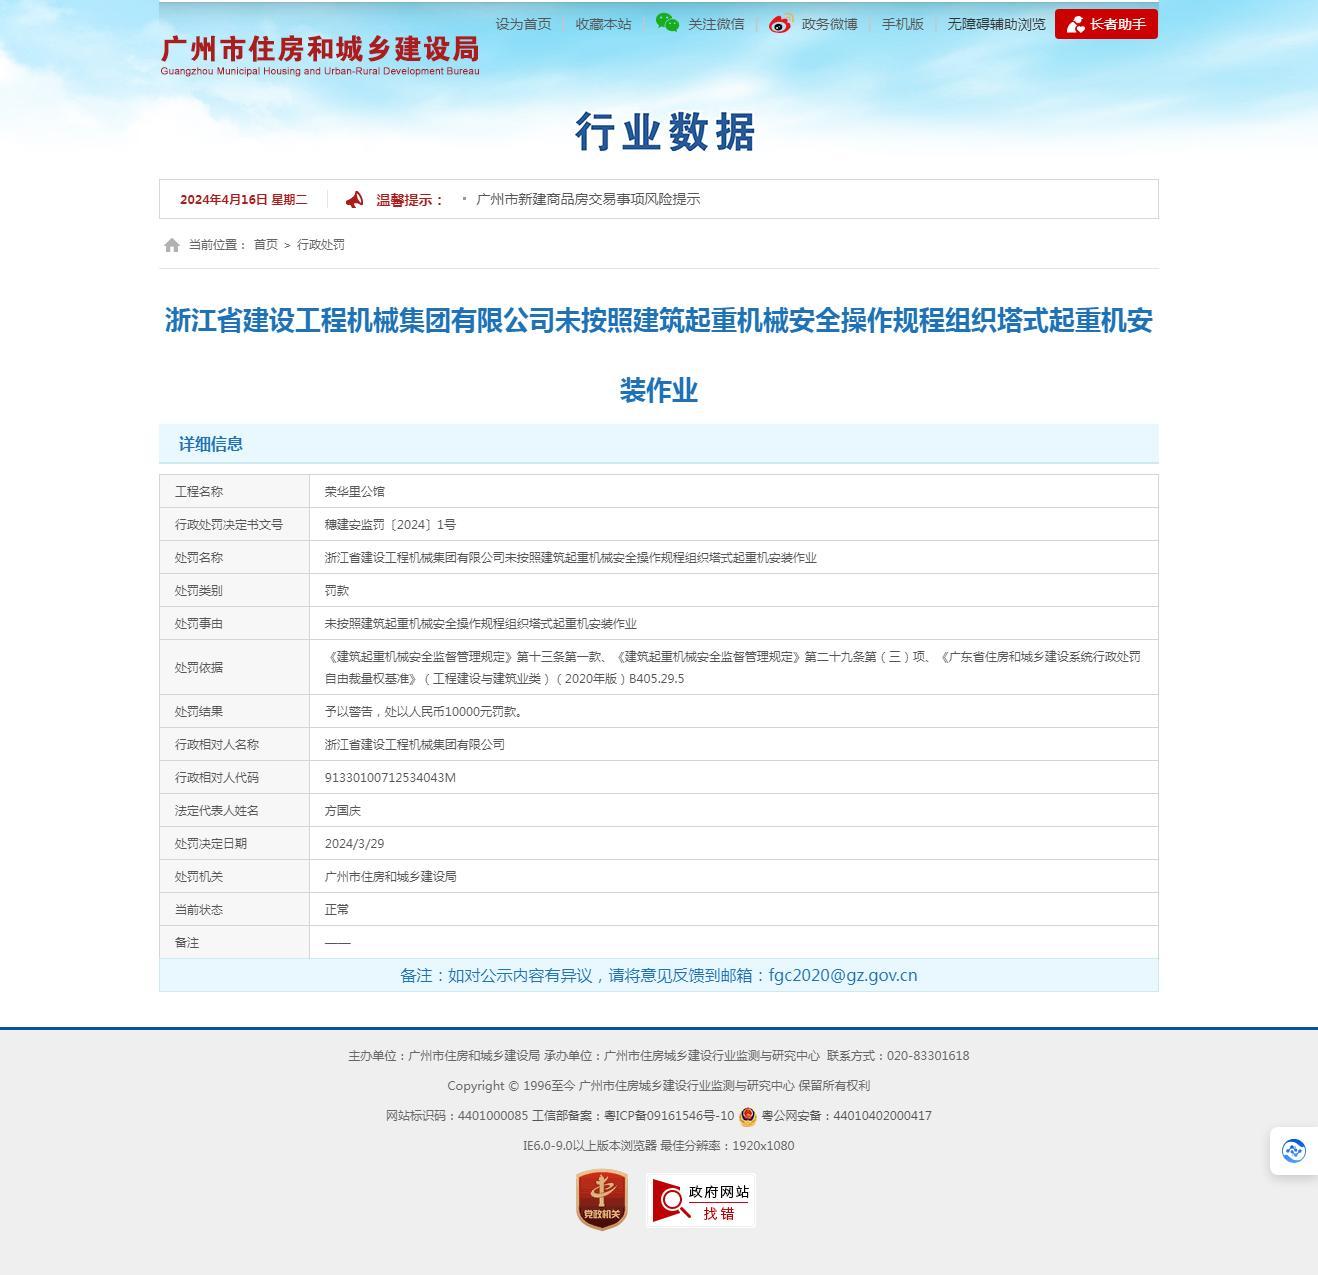 浙江省建设工程机械集团有限公司因未按操作规程组织塔式起重机安装作业被罚1万元